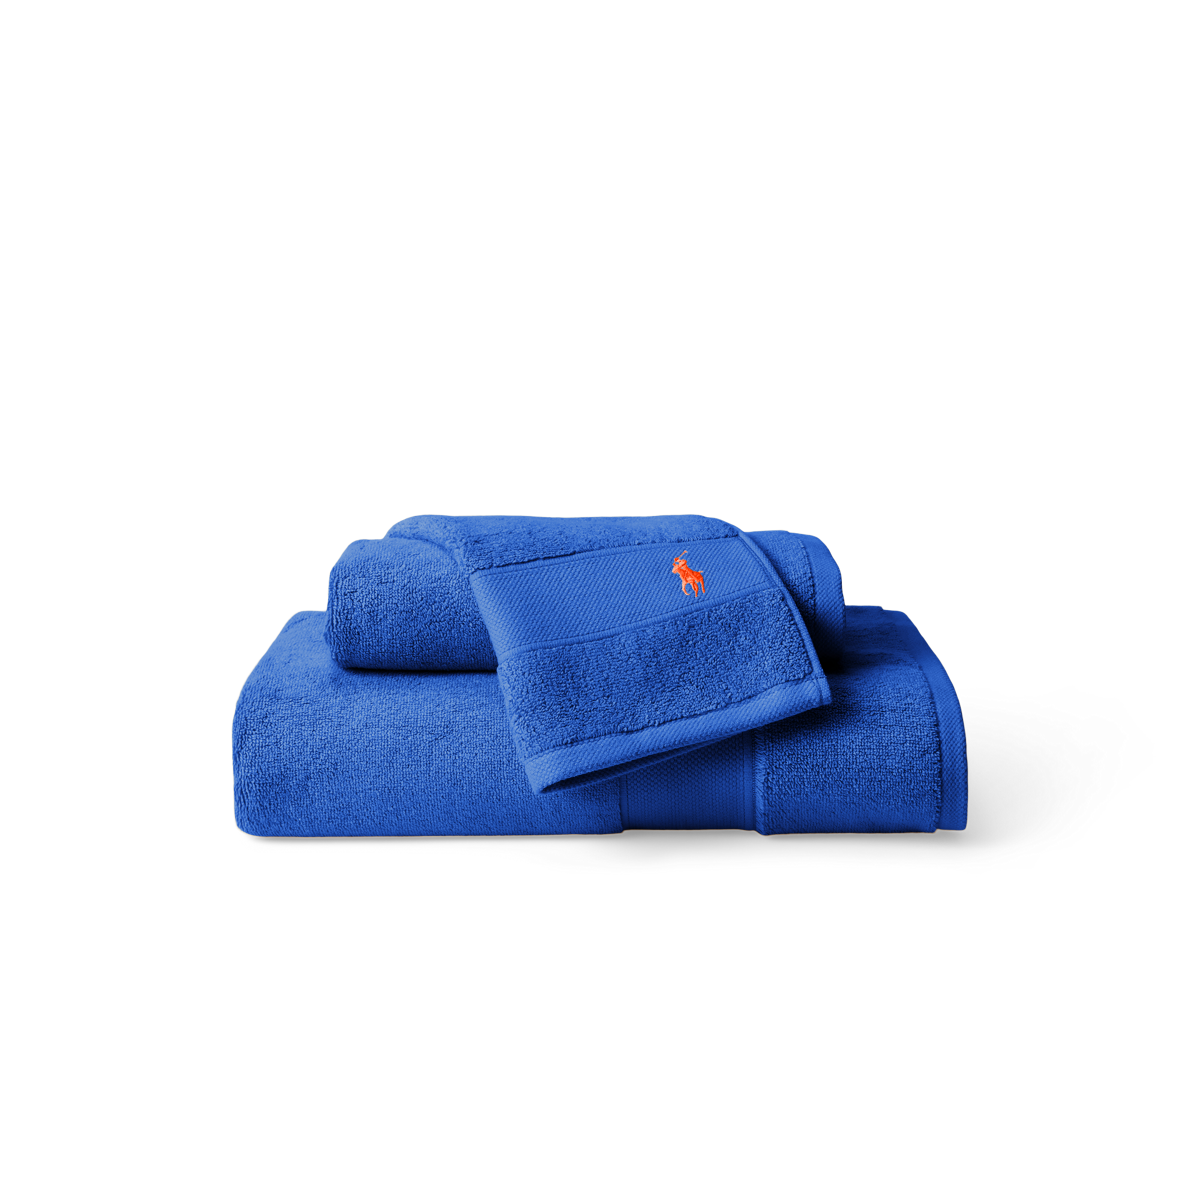 Ralph Lauren Polo Player Hand Towel - New Iris Blue